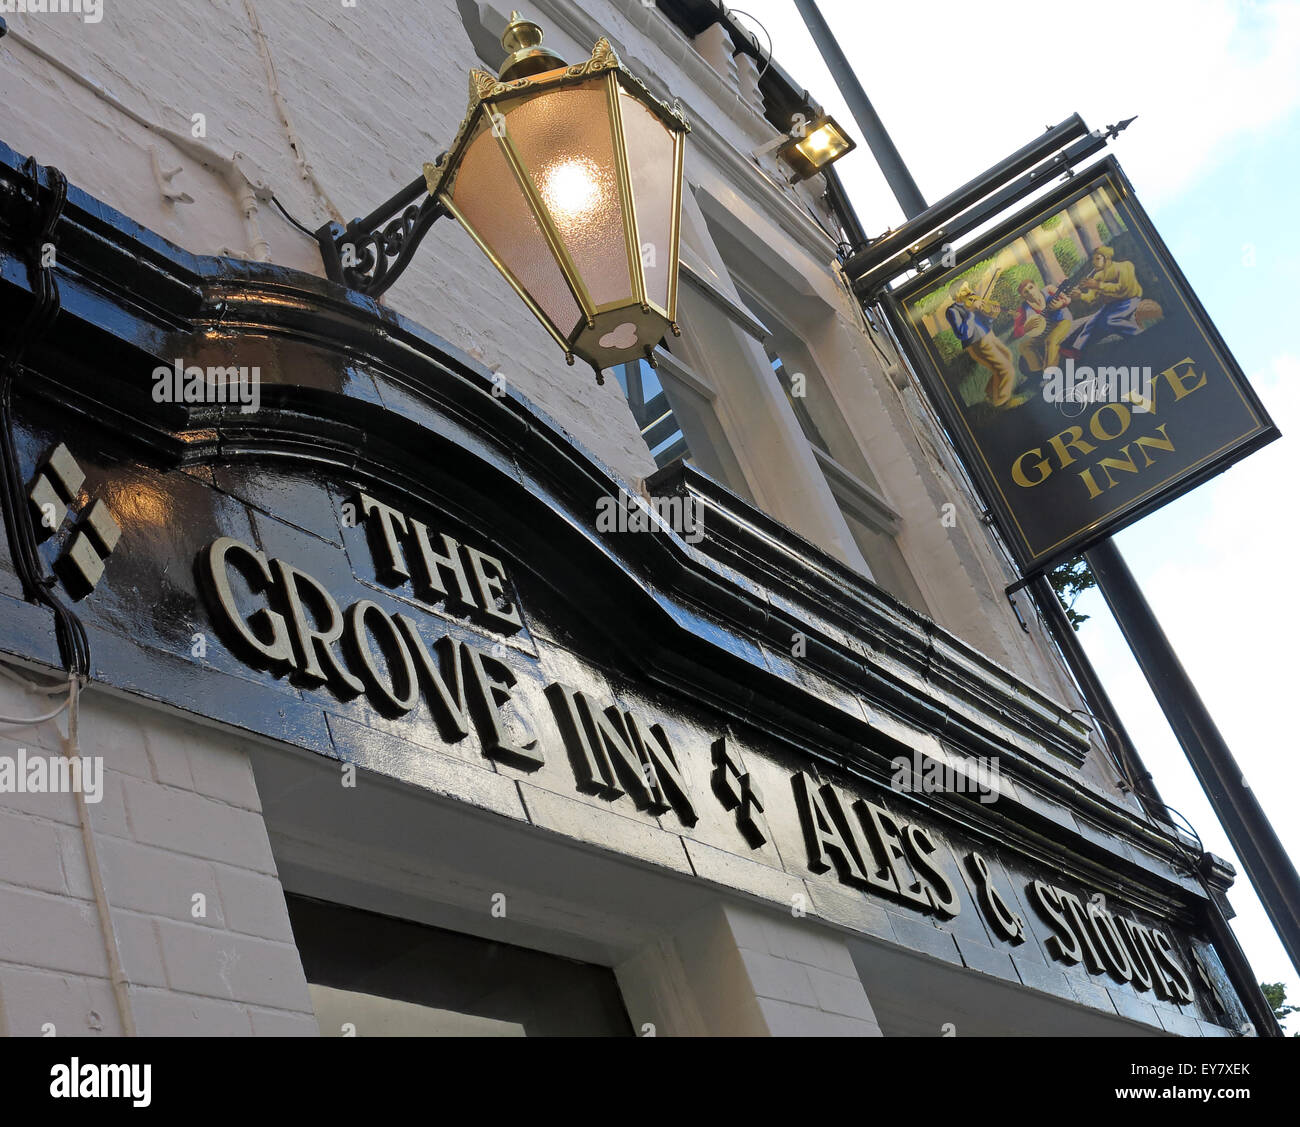 Grove Inn Pub, à l'arrière, de Leeds, West Yorkshire, Angleterre, Royaume-Uni - Looking up Banque D'Images